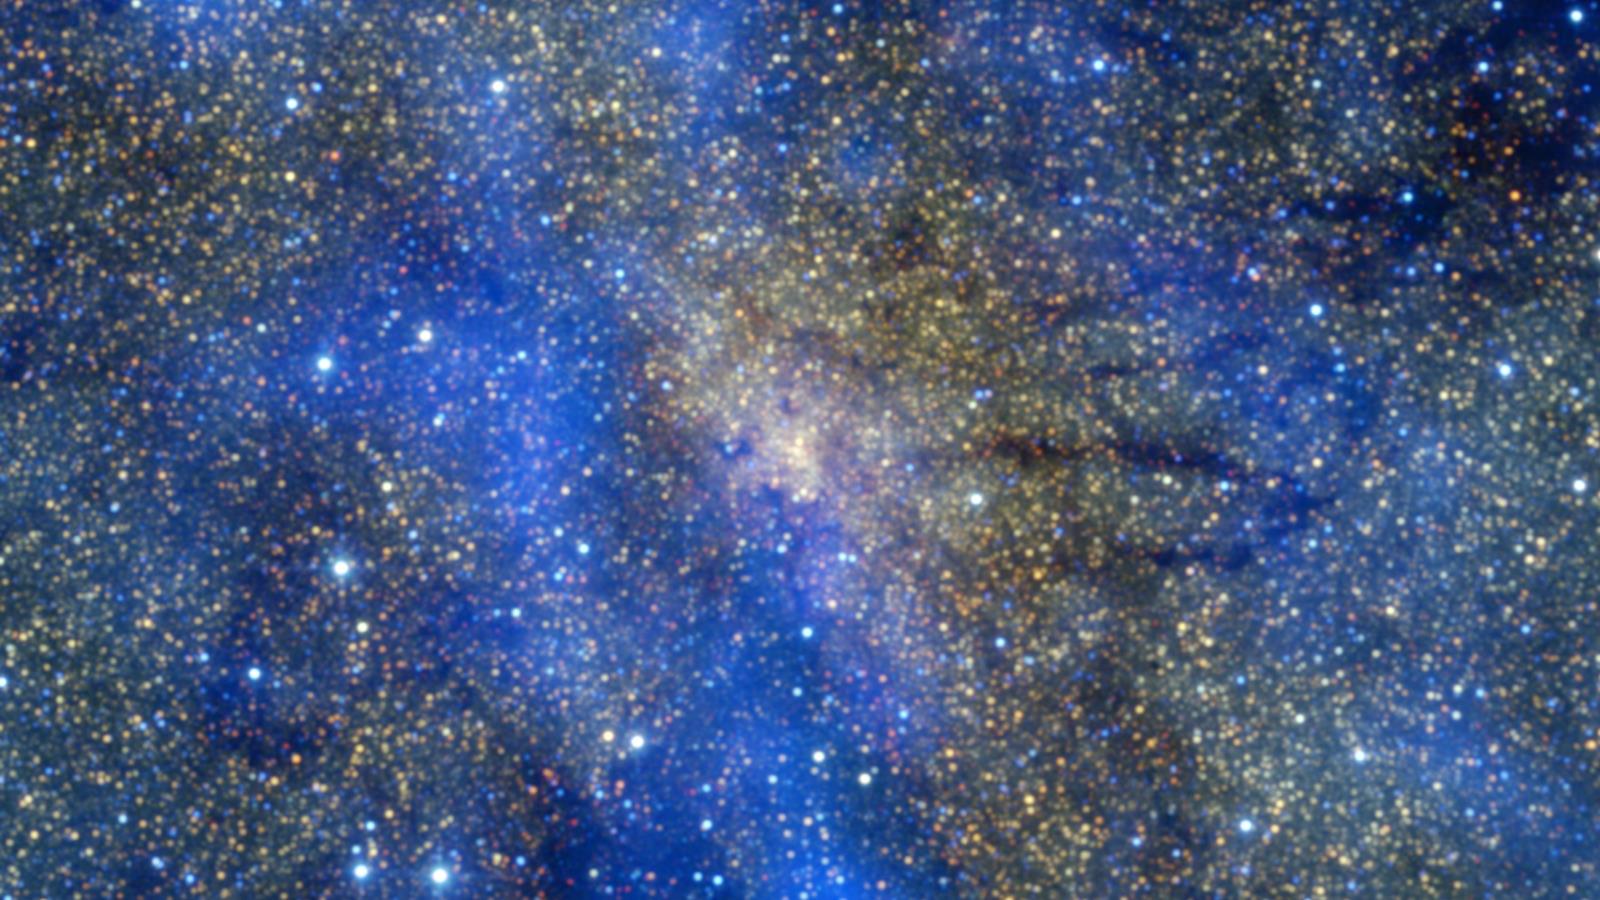 ‪النطاق المركزي في مجرة درب التبانة‬ (ويكيميديا كومونز)